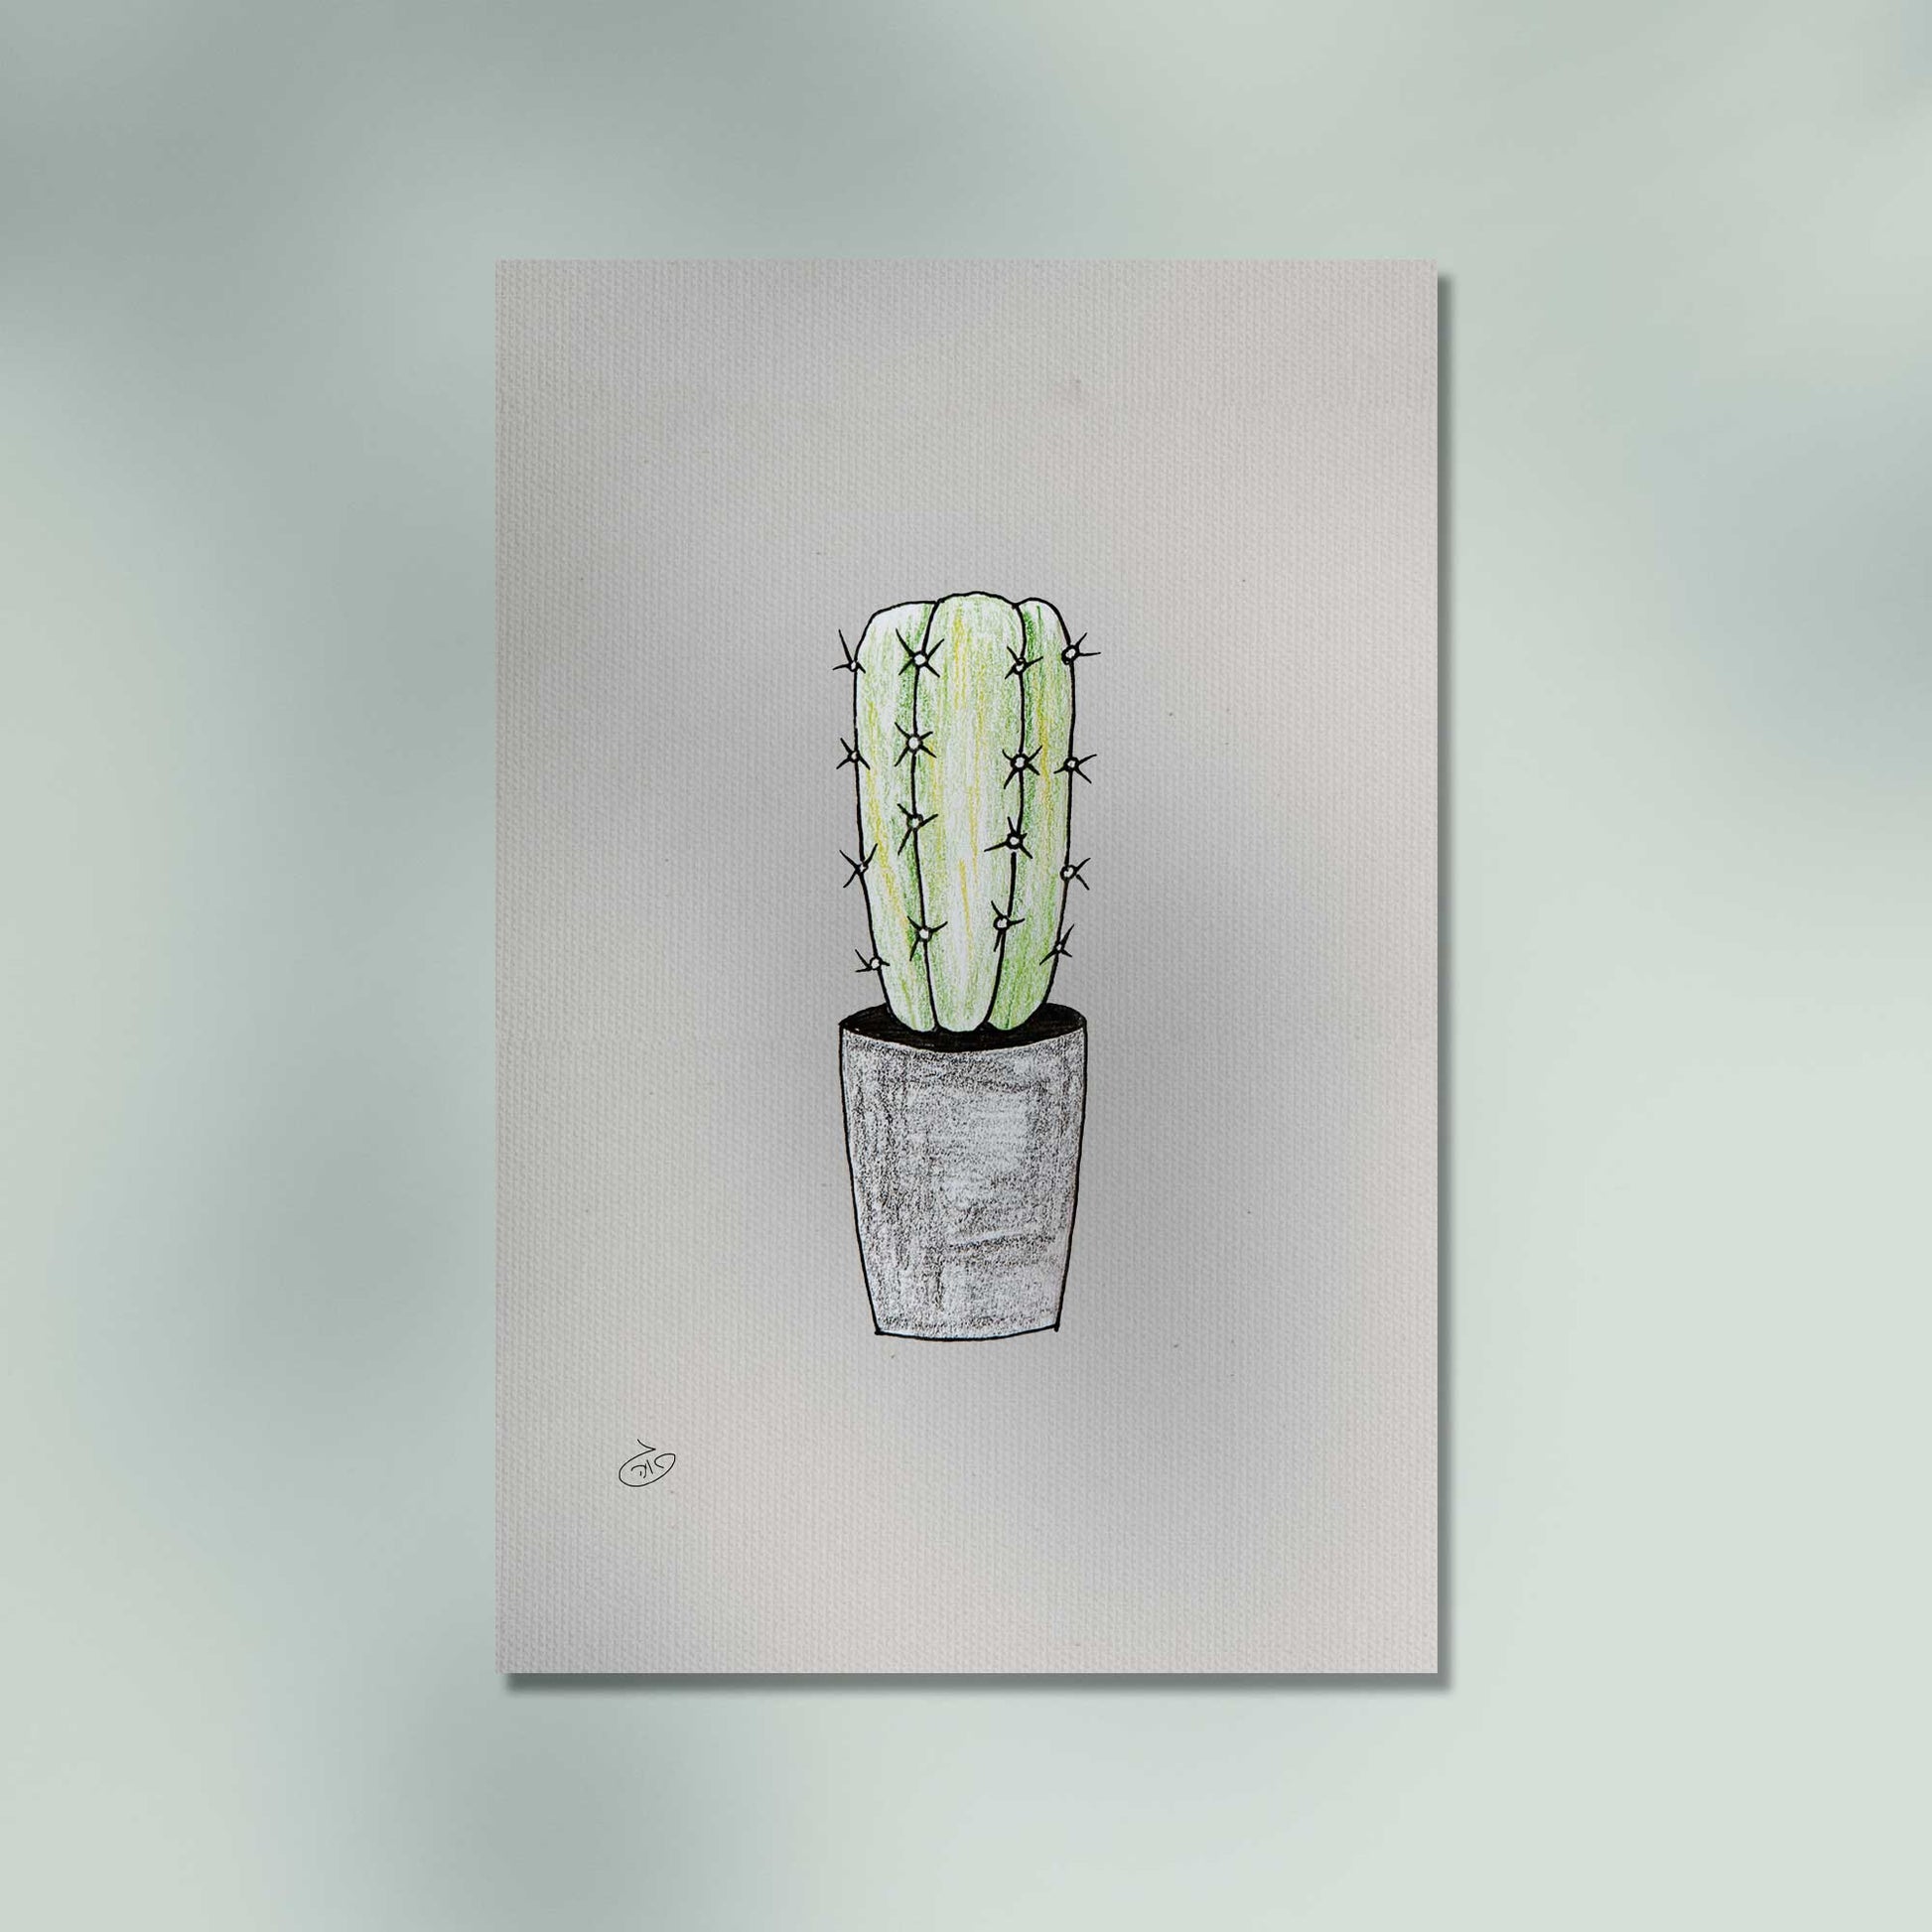 פוסטר Succulent Cactus Poster ציור מקורי של גאיה המקדם את המודעות לאלימות בין בני זוג בכלל וכלפי נשים בפרט